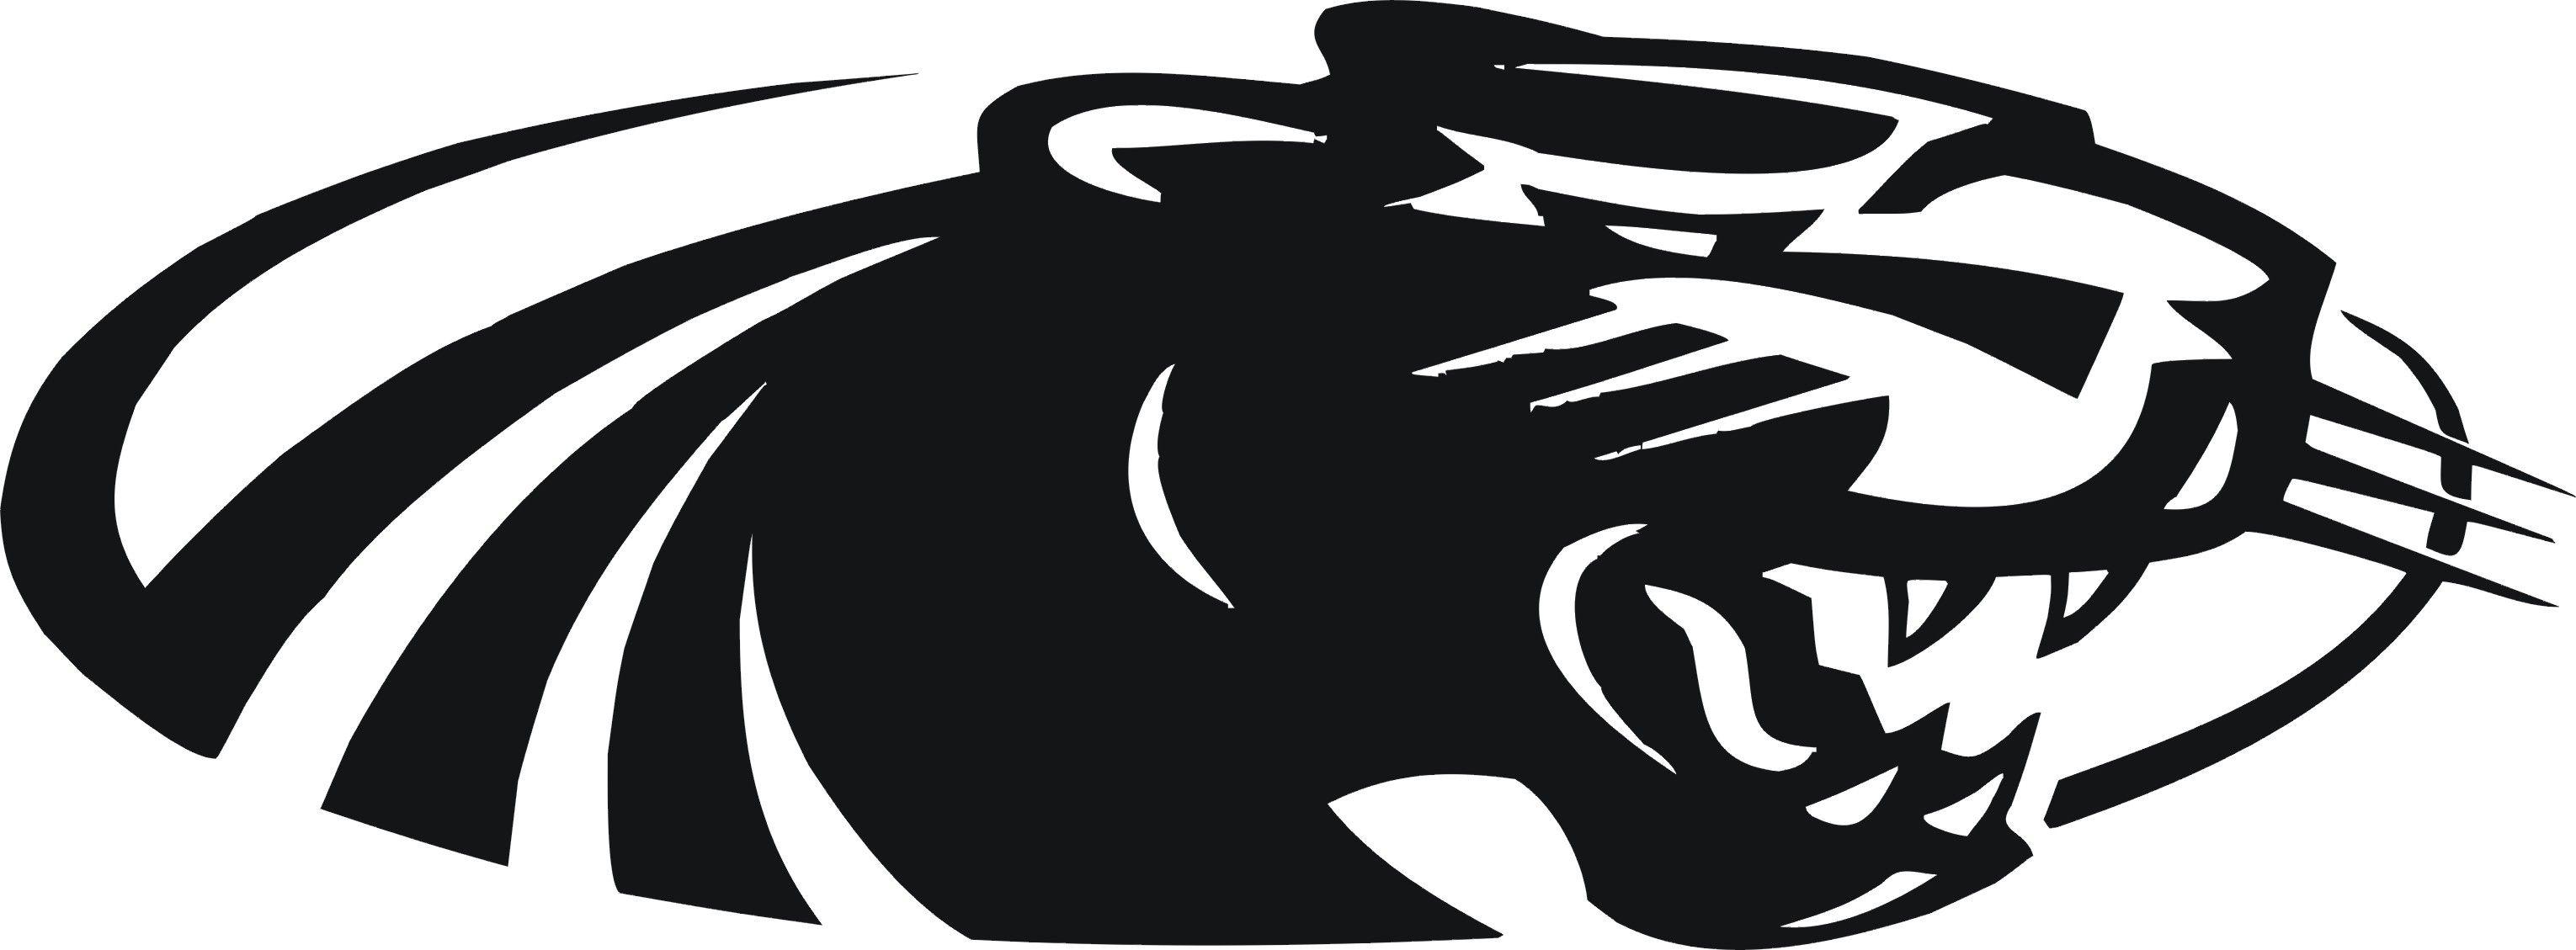 Red and Black Panther Logo - Black panther Logos